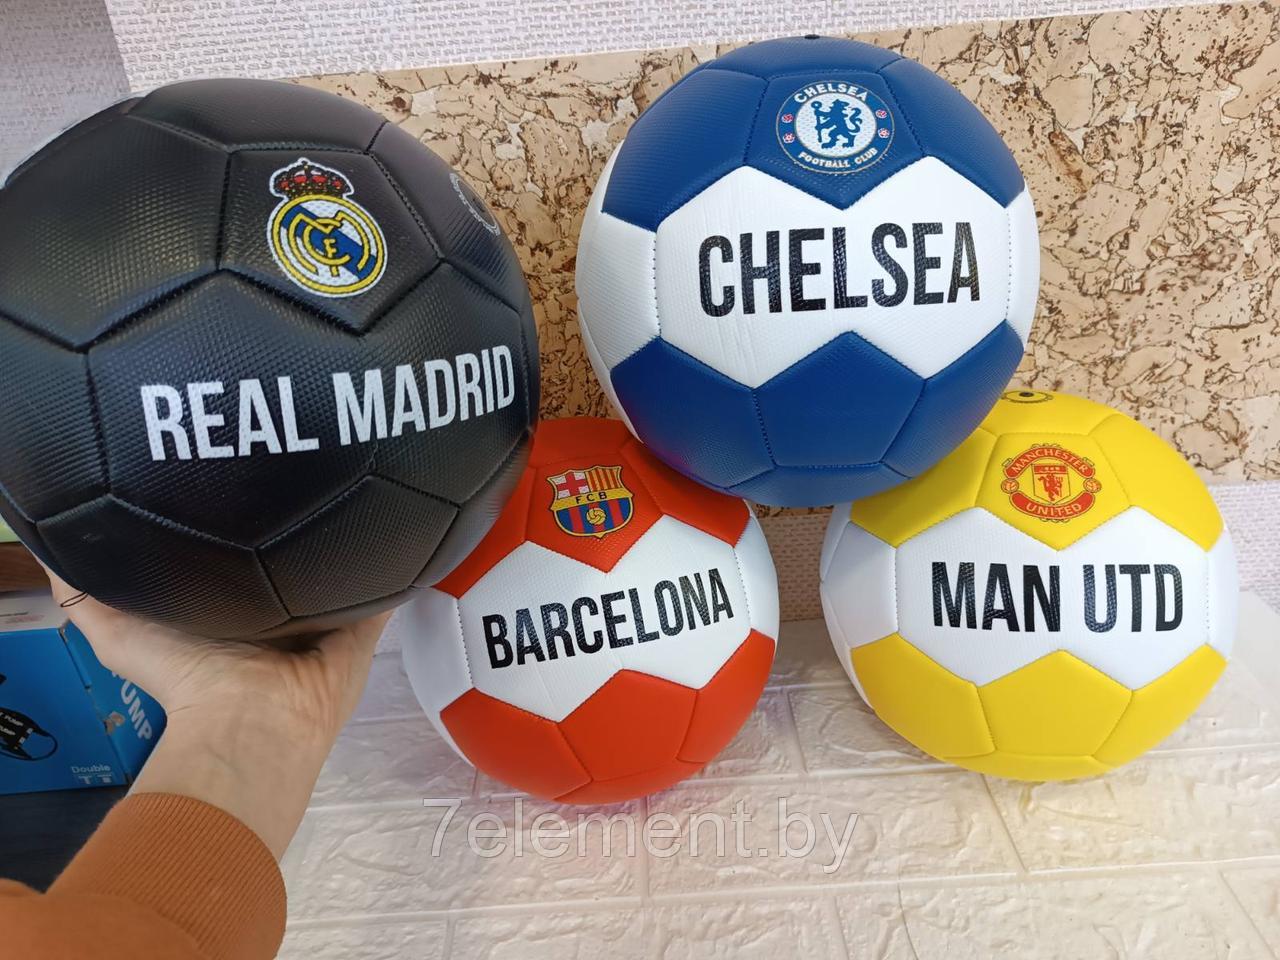 Мяч футбольный 3-х слойный OFFICIAL для футбола, размер 5, Барселона Реал Челси Манчестер Юнайтед